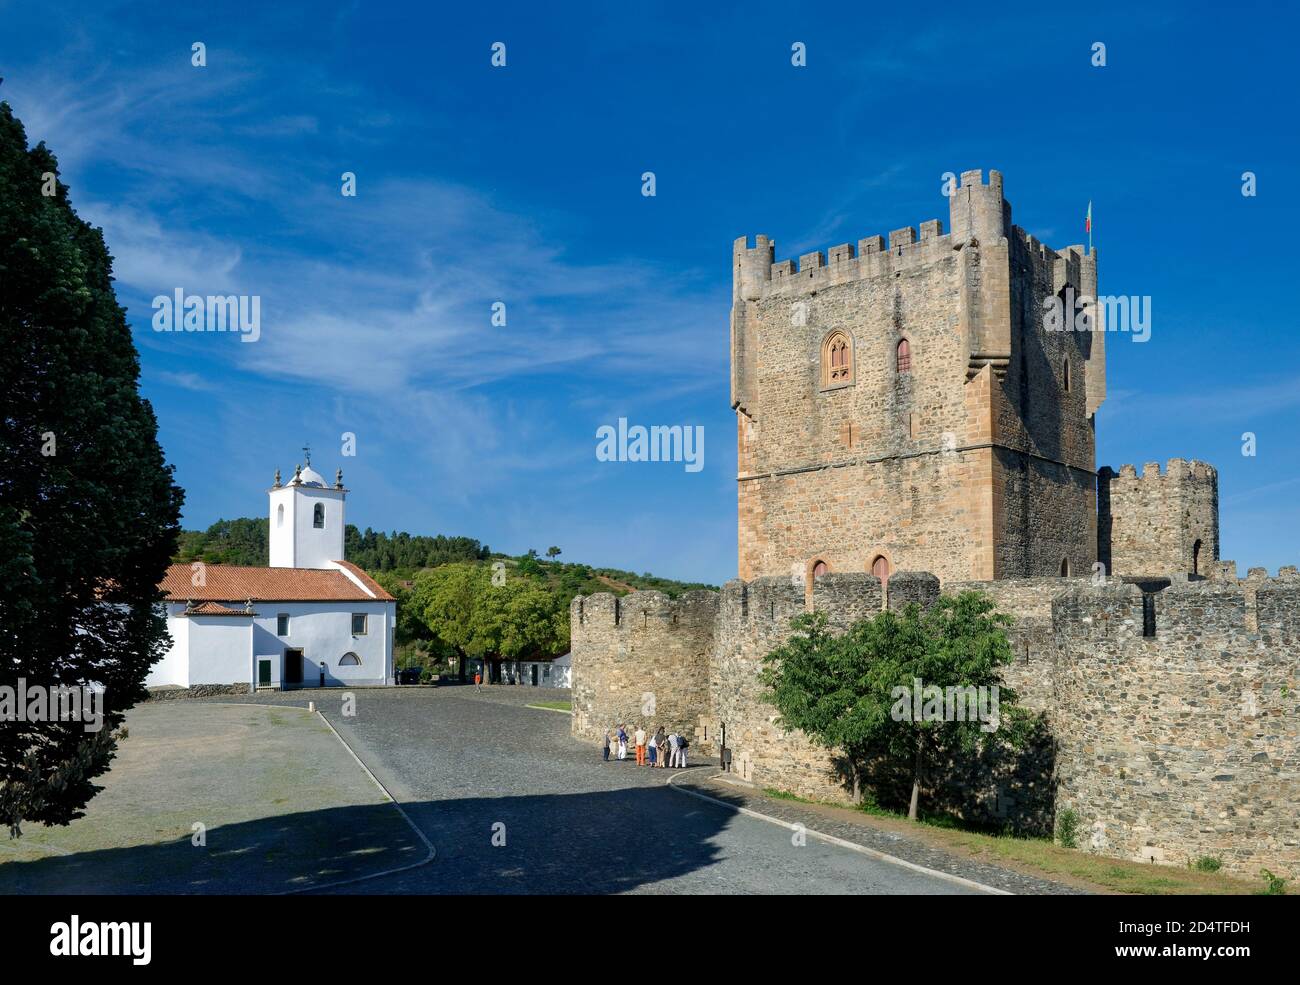 Le nord du Portugal, Tras-os-Montes, Braganca castle Banque D'Images